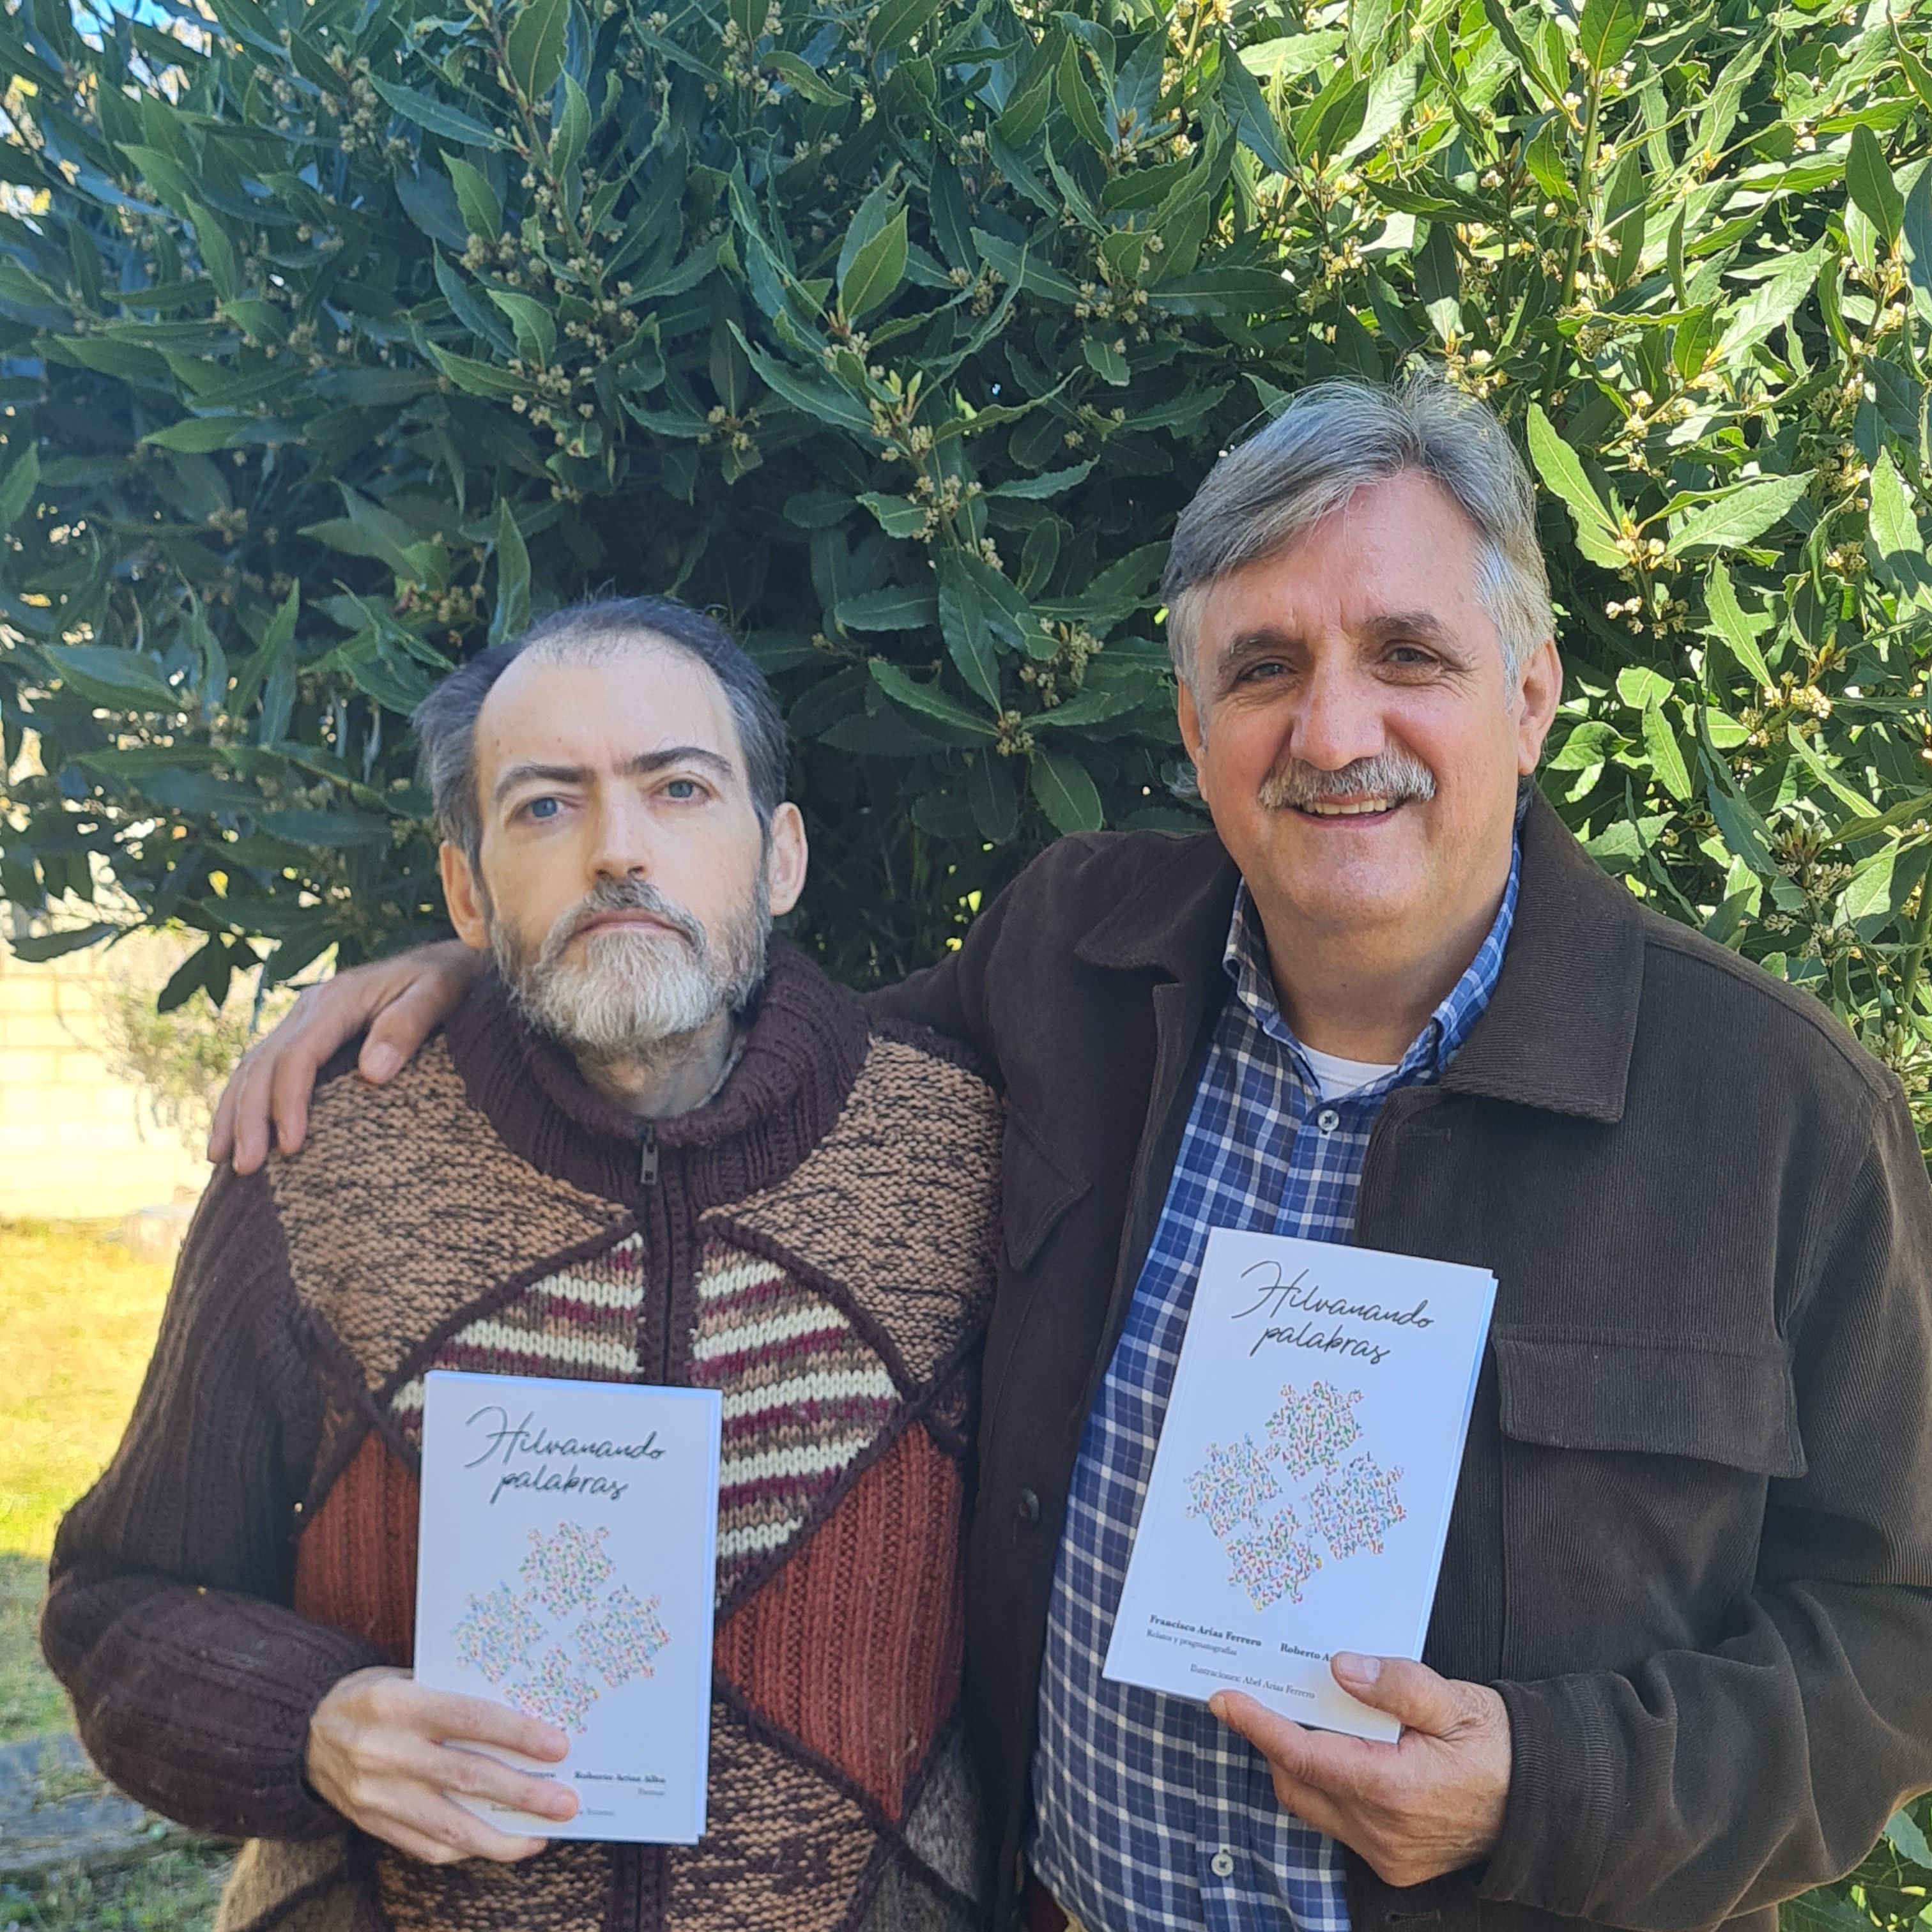 Fotografía de los dos autores con su libro entre las manos. 